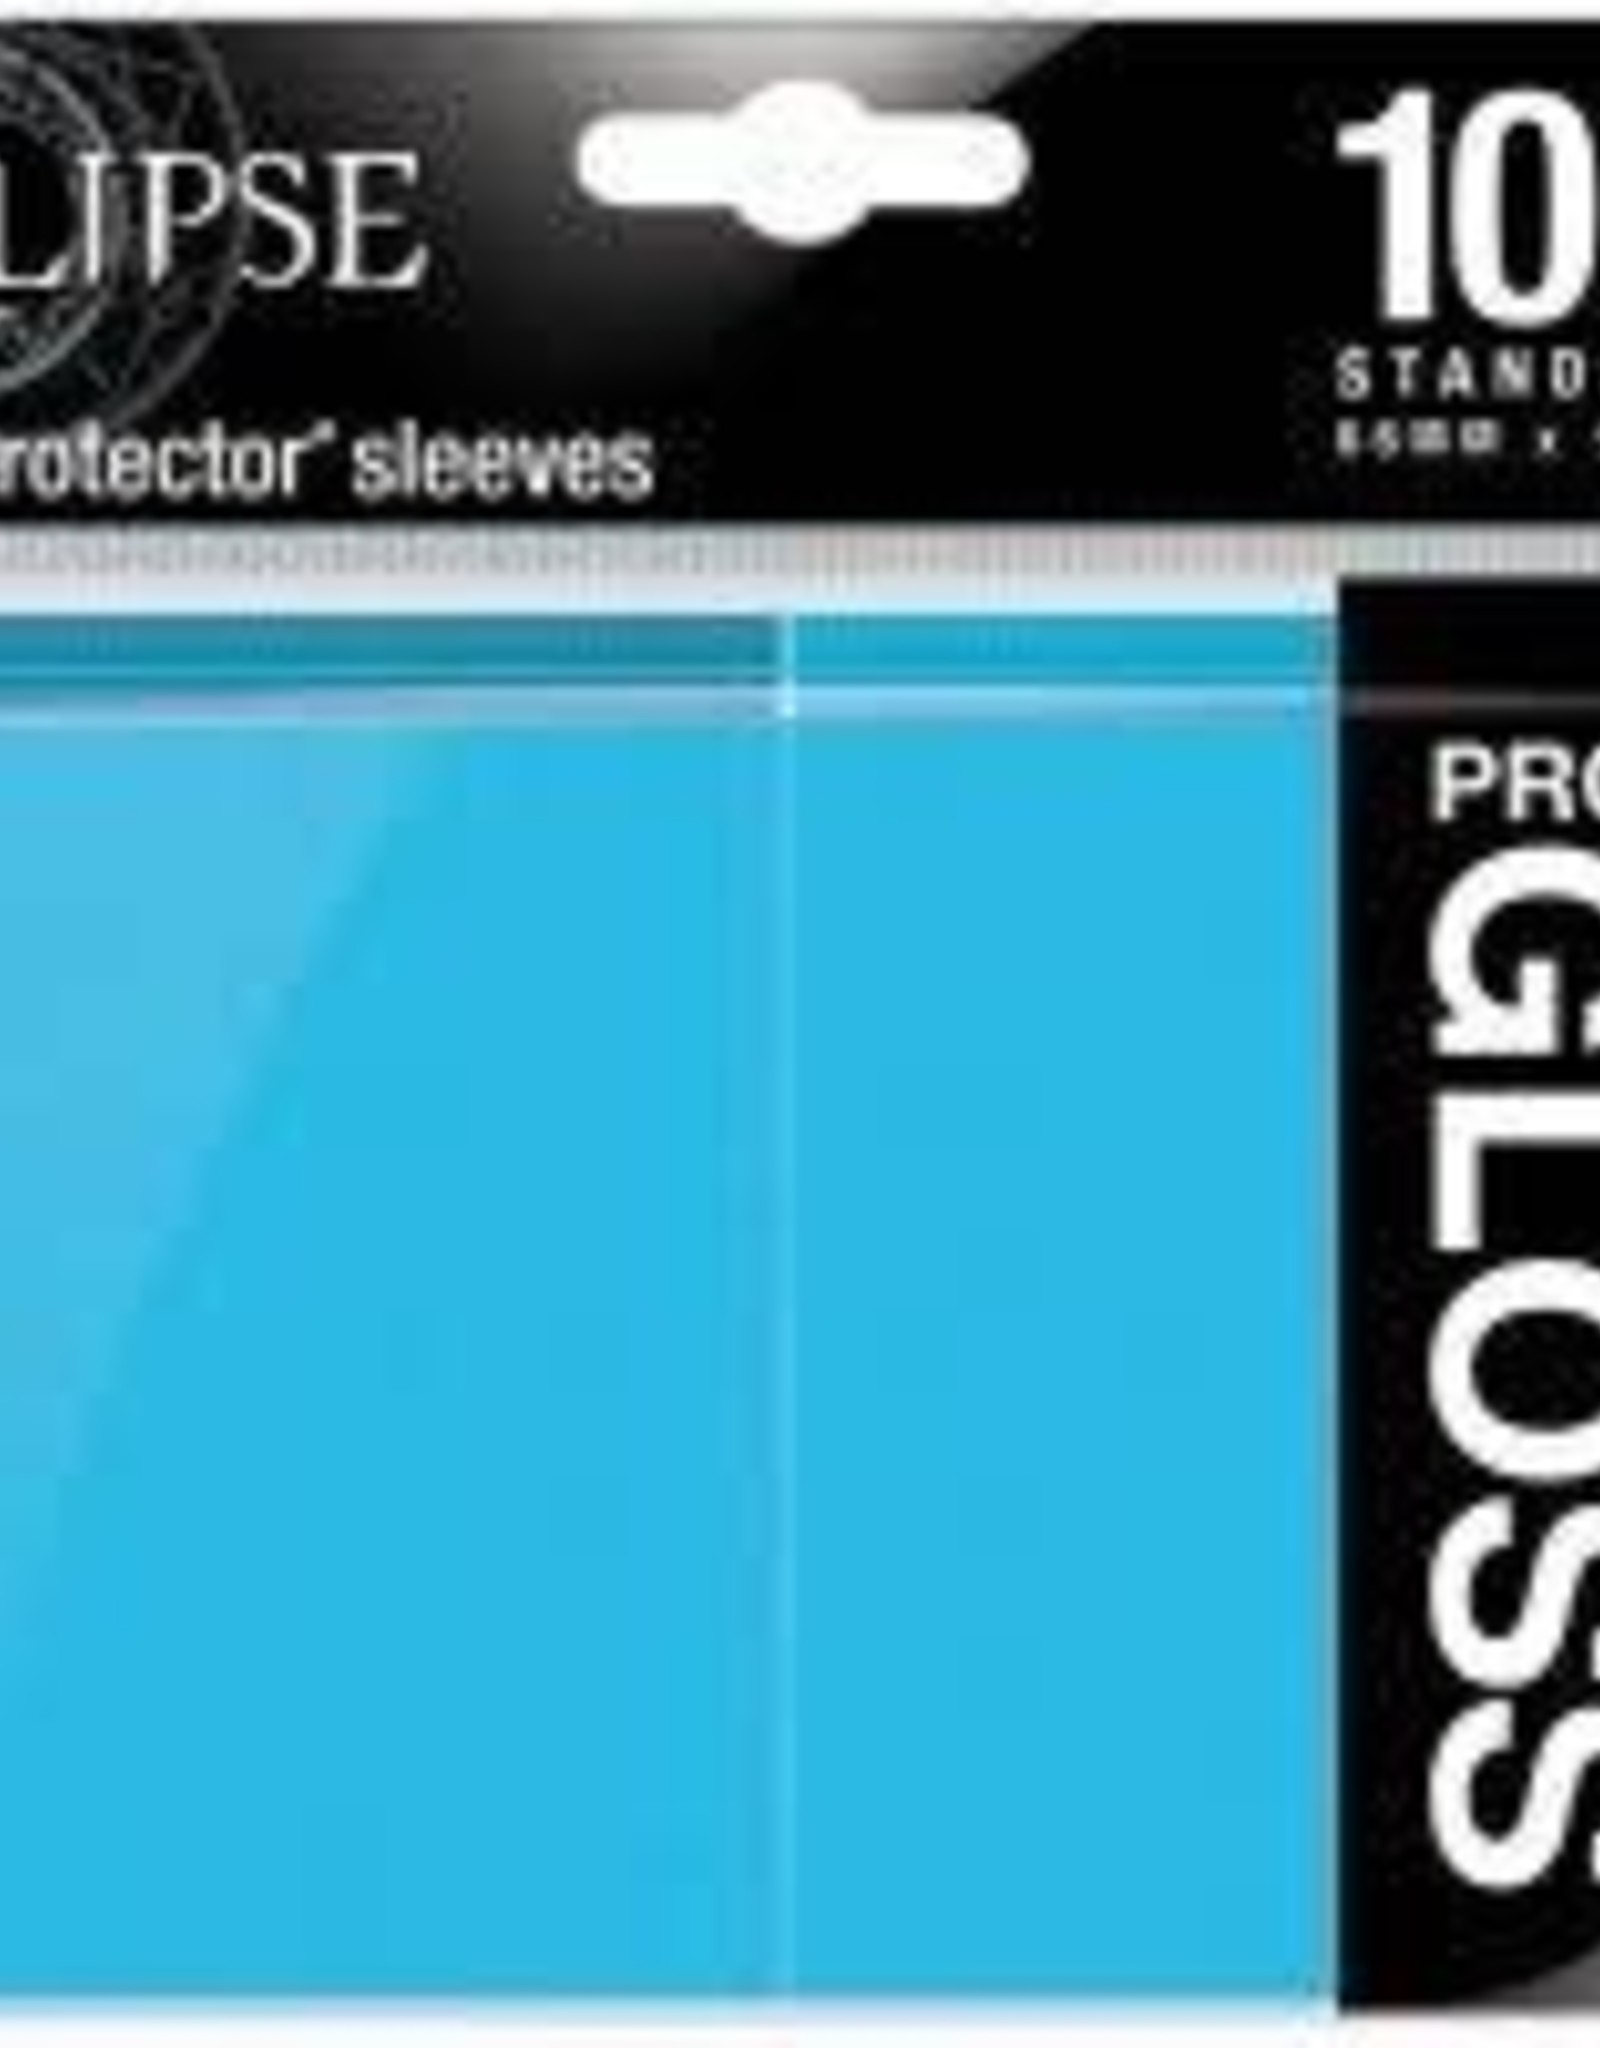 Sky Blue 100 UPI15603 Ultra Pro Eclipse Gloss Standard Sleeves 